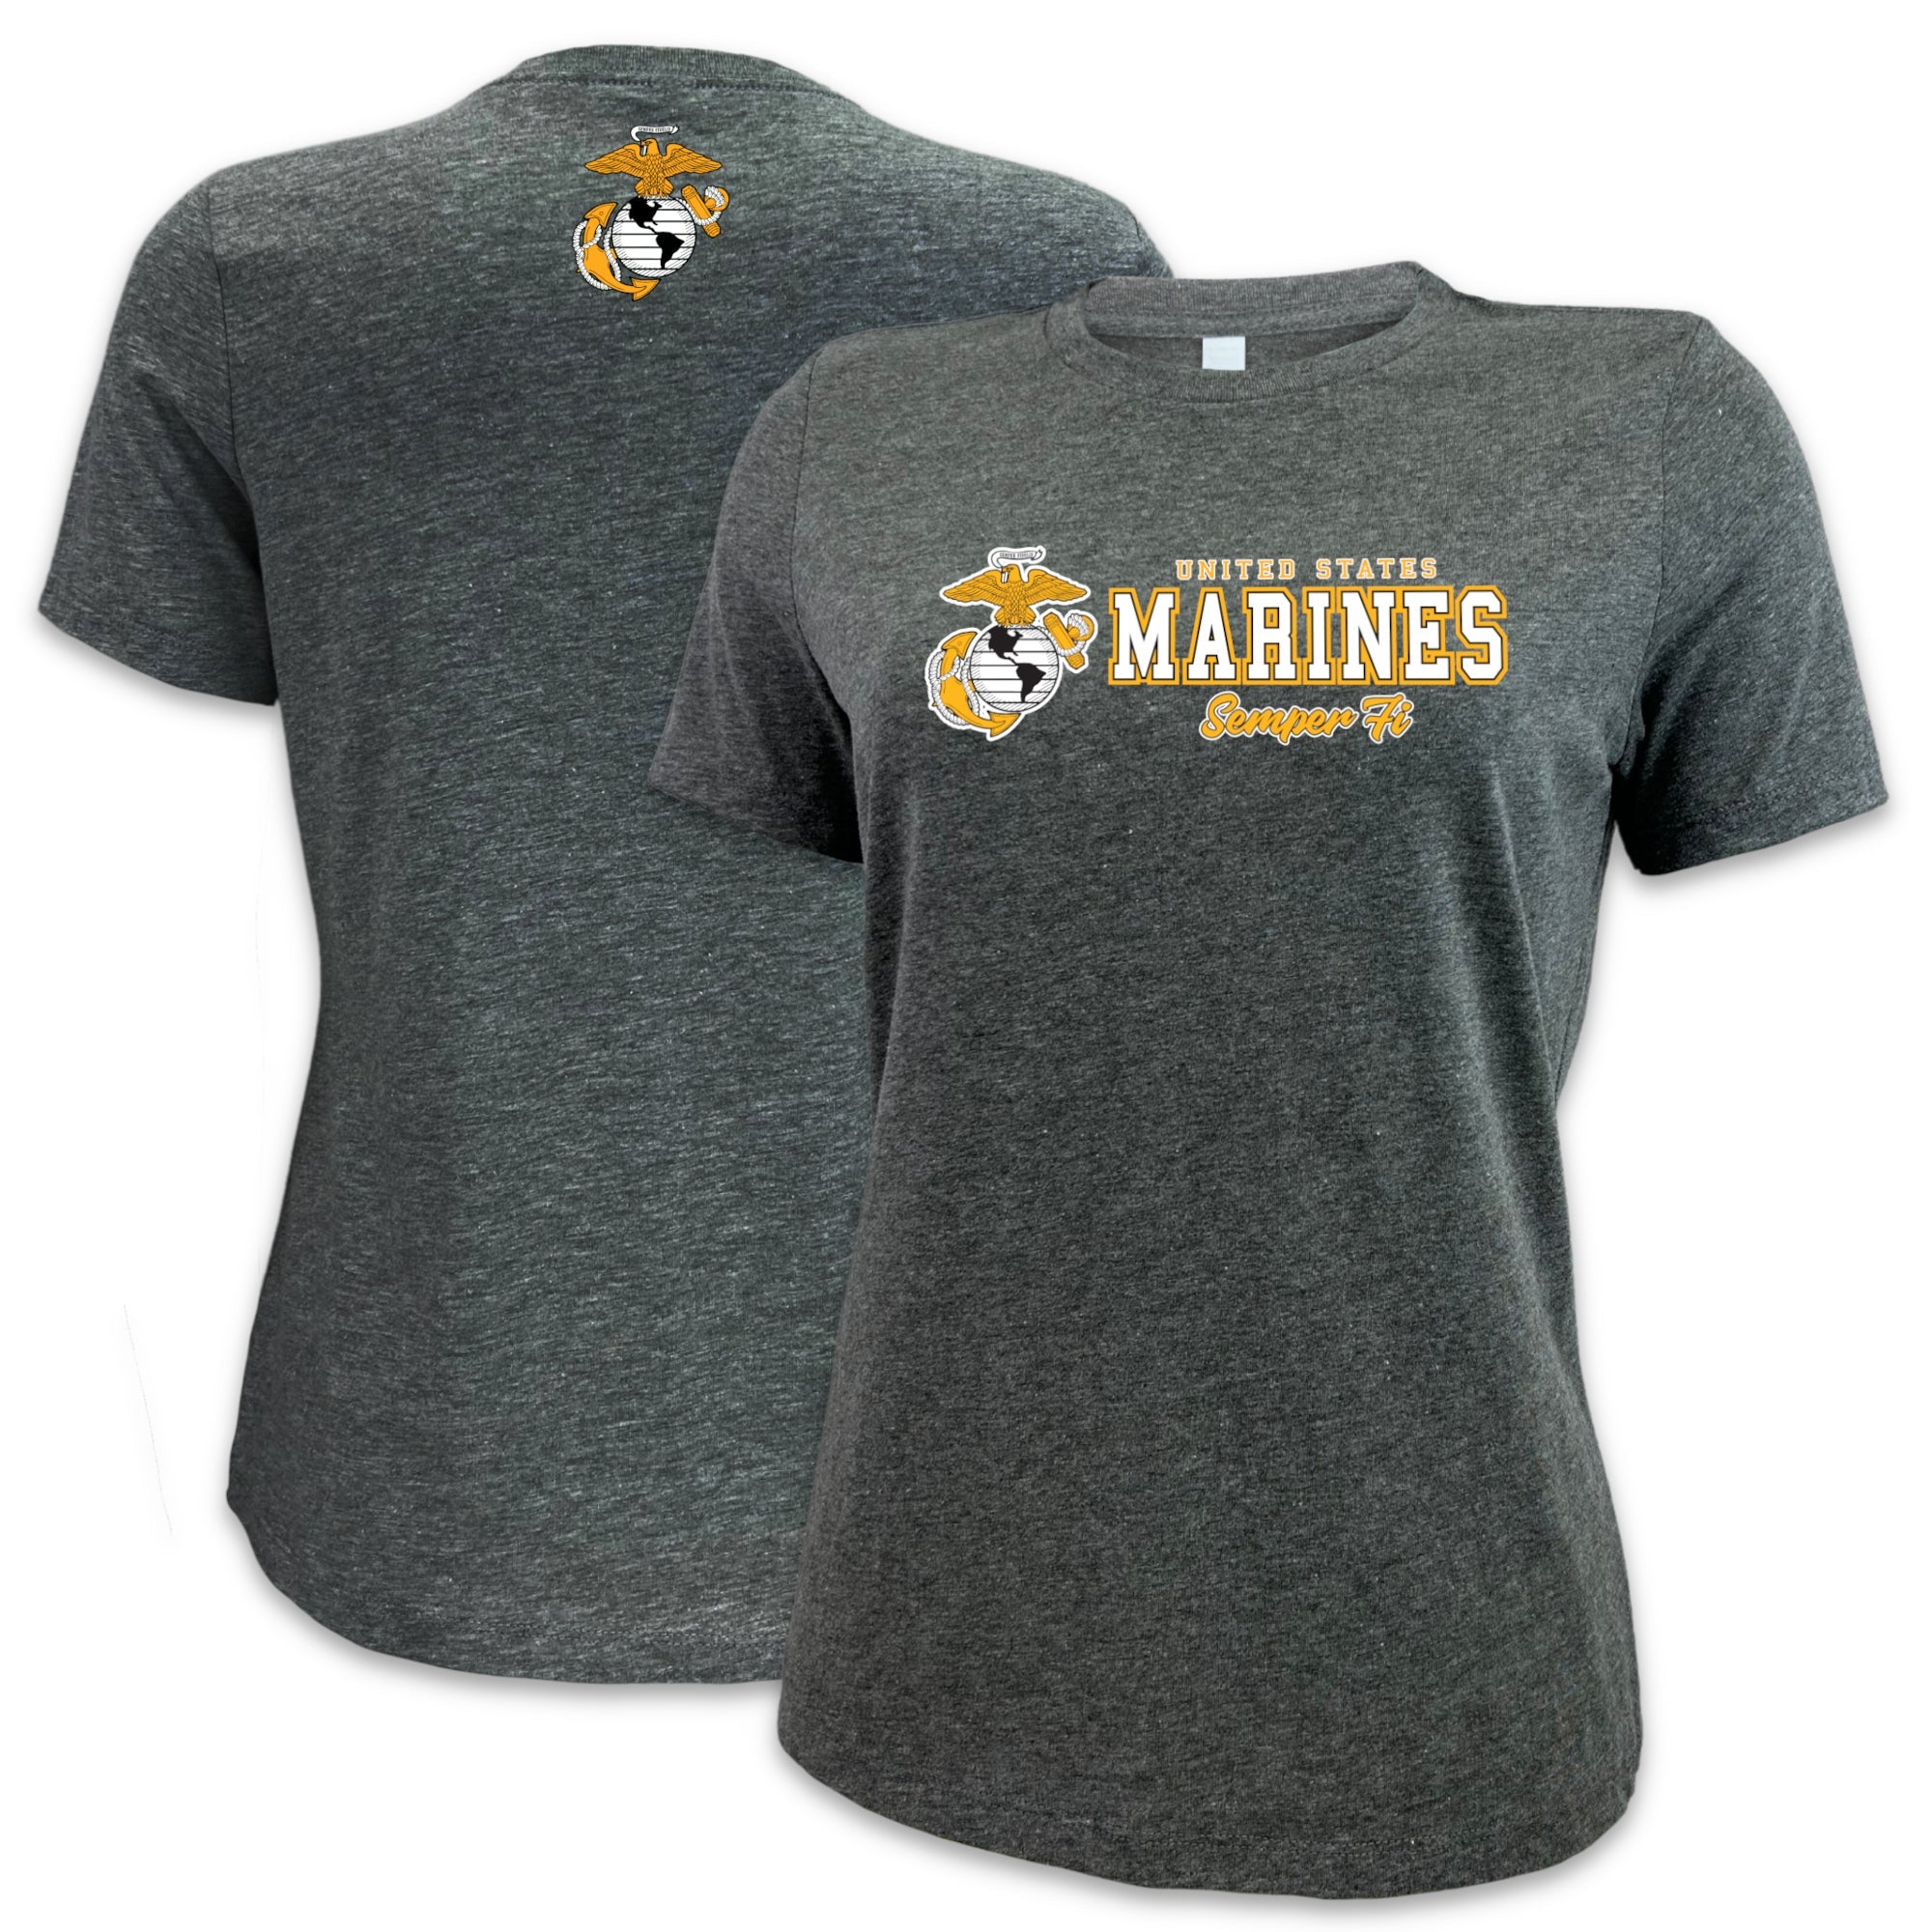 Marines Ladies Duo T-Shirt